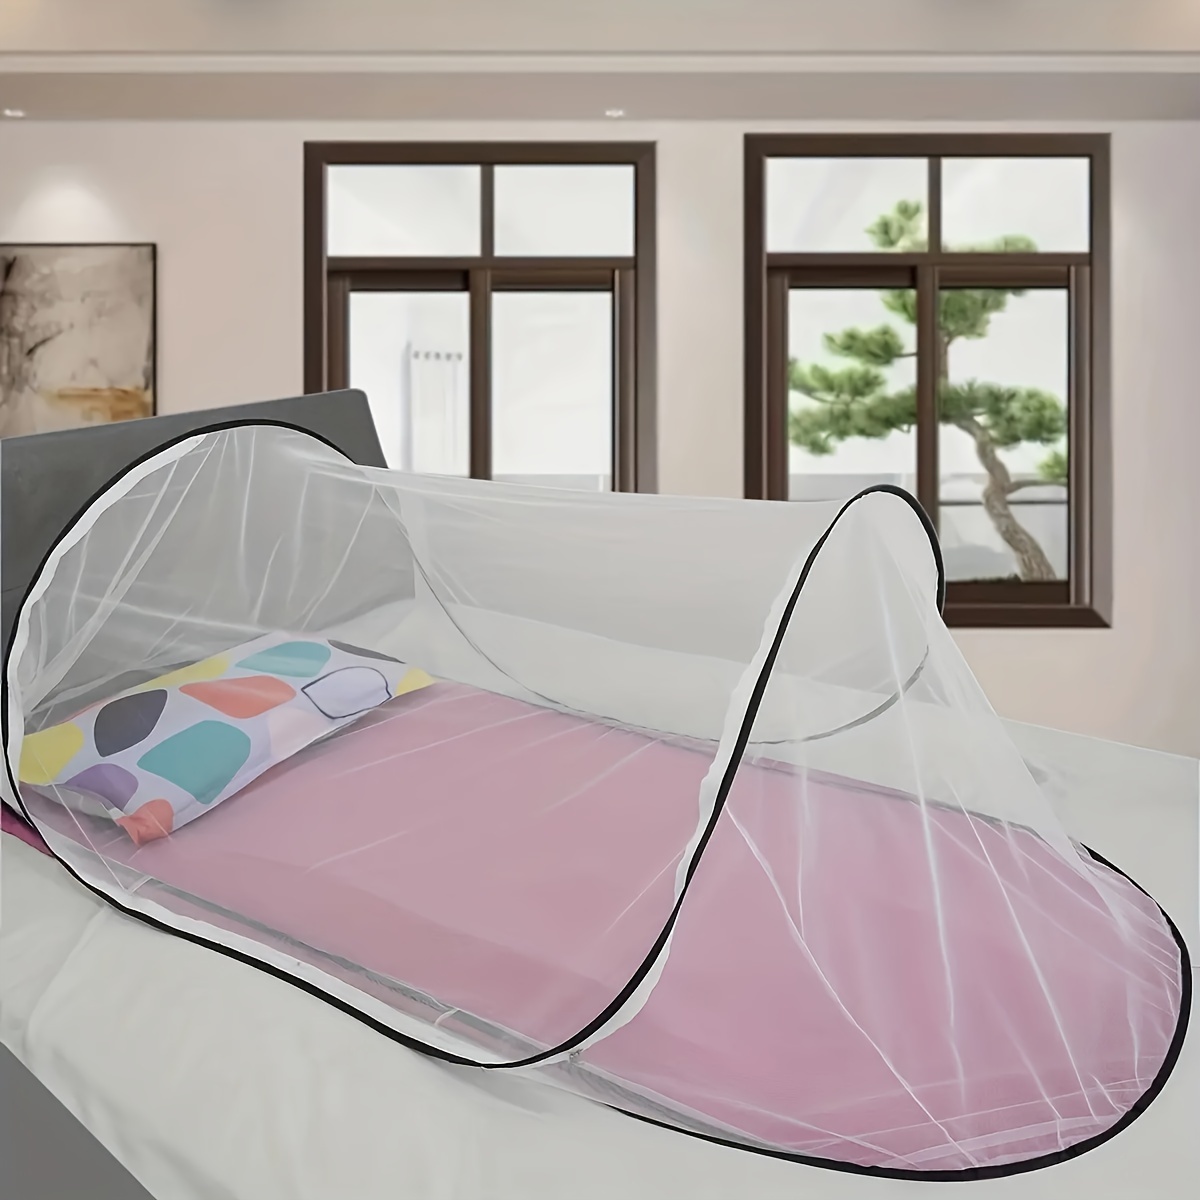 Tragbare Pop-up-Moskitonetz Schlafsack Insektennetz für Bettwäsche